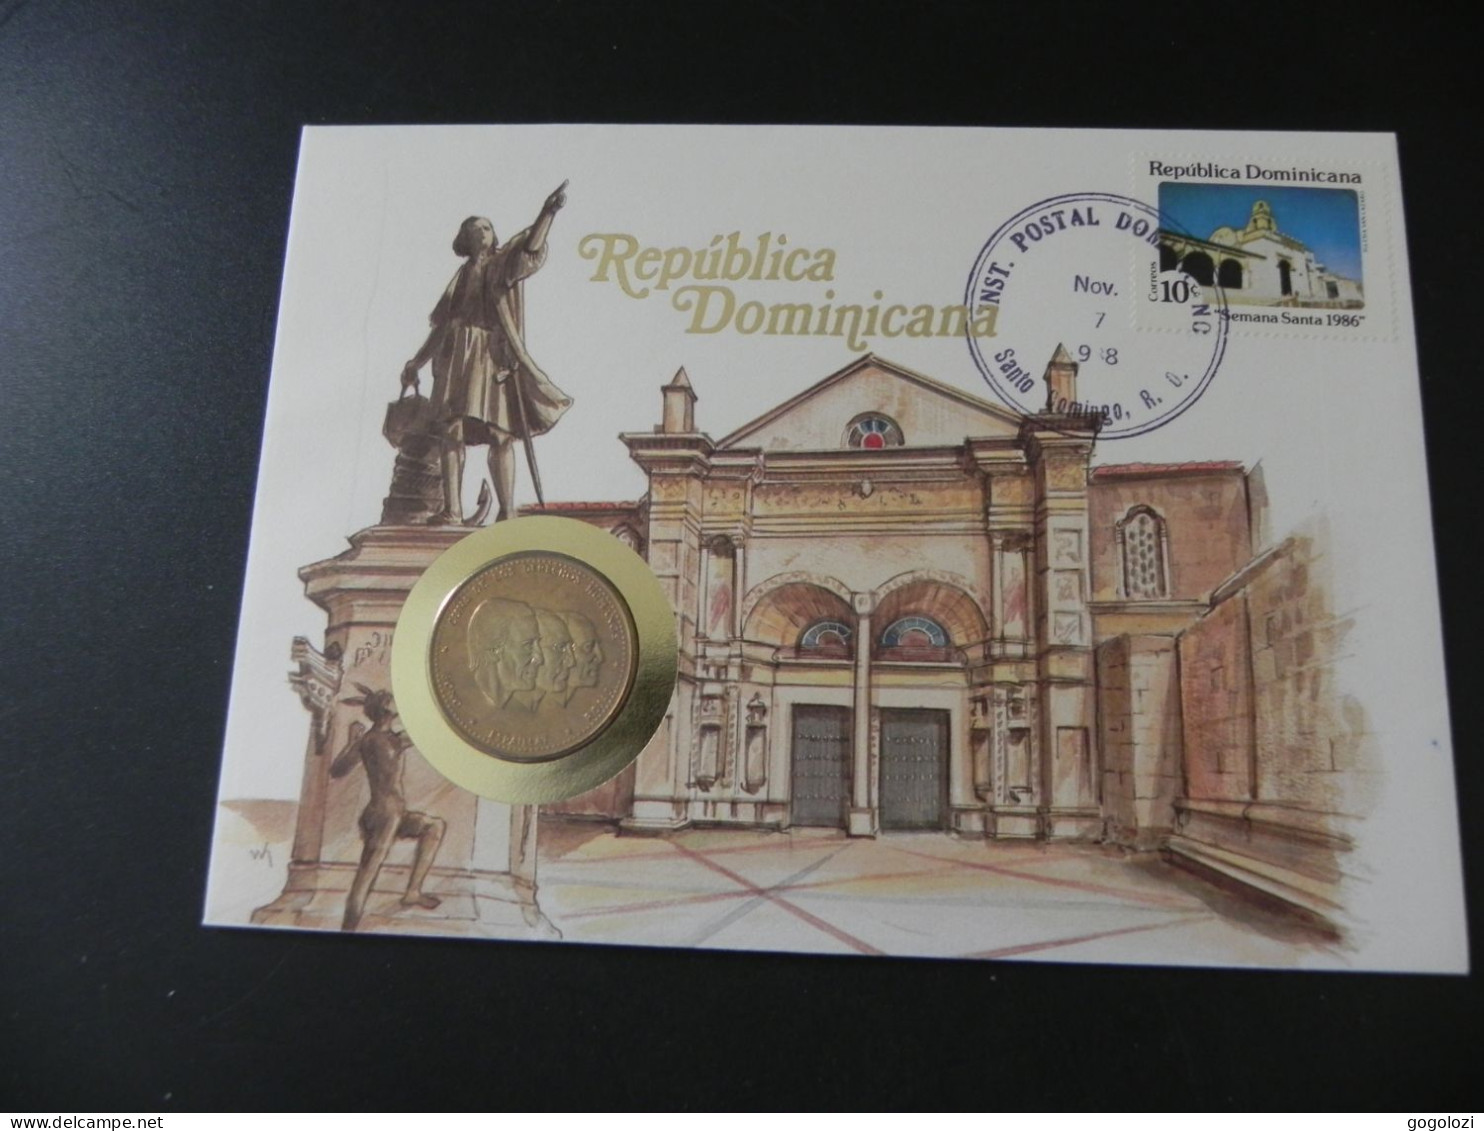 Dominican Republic 1/2 Peso 1983 - Cuna De Los Derechos Humanos - Bono Espaillat Rojas - Numis Letter 1988 - Dominikanische Rep.